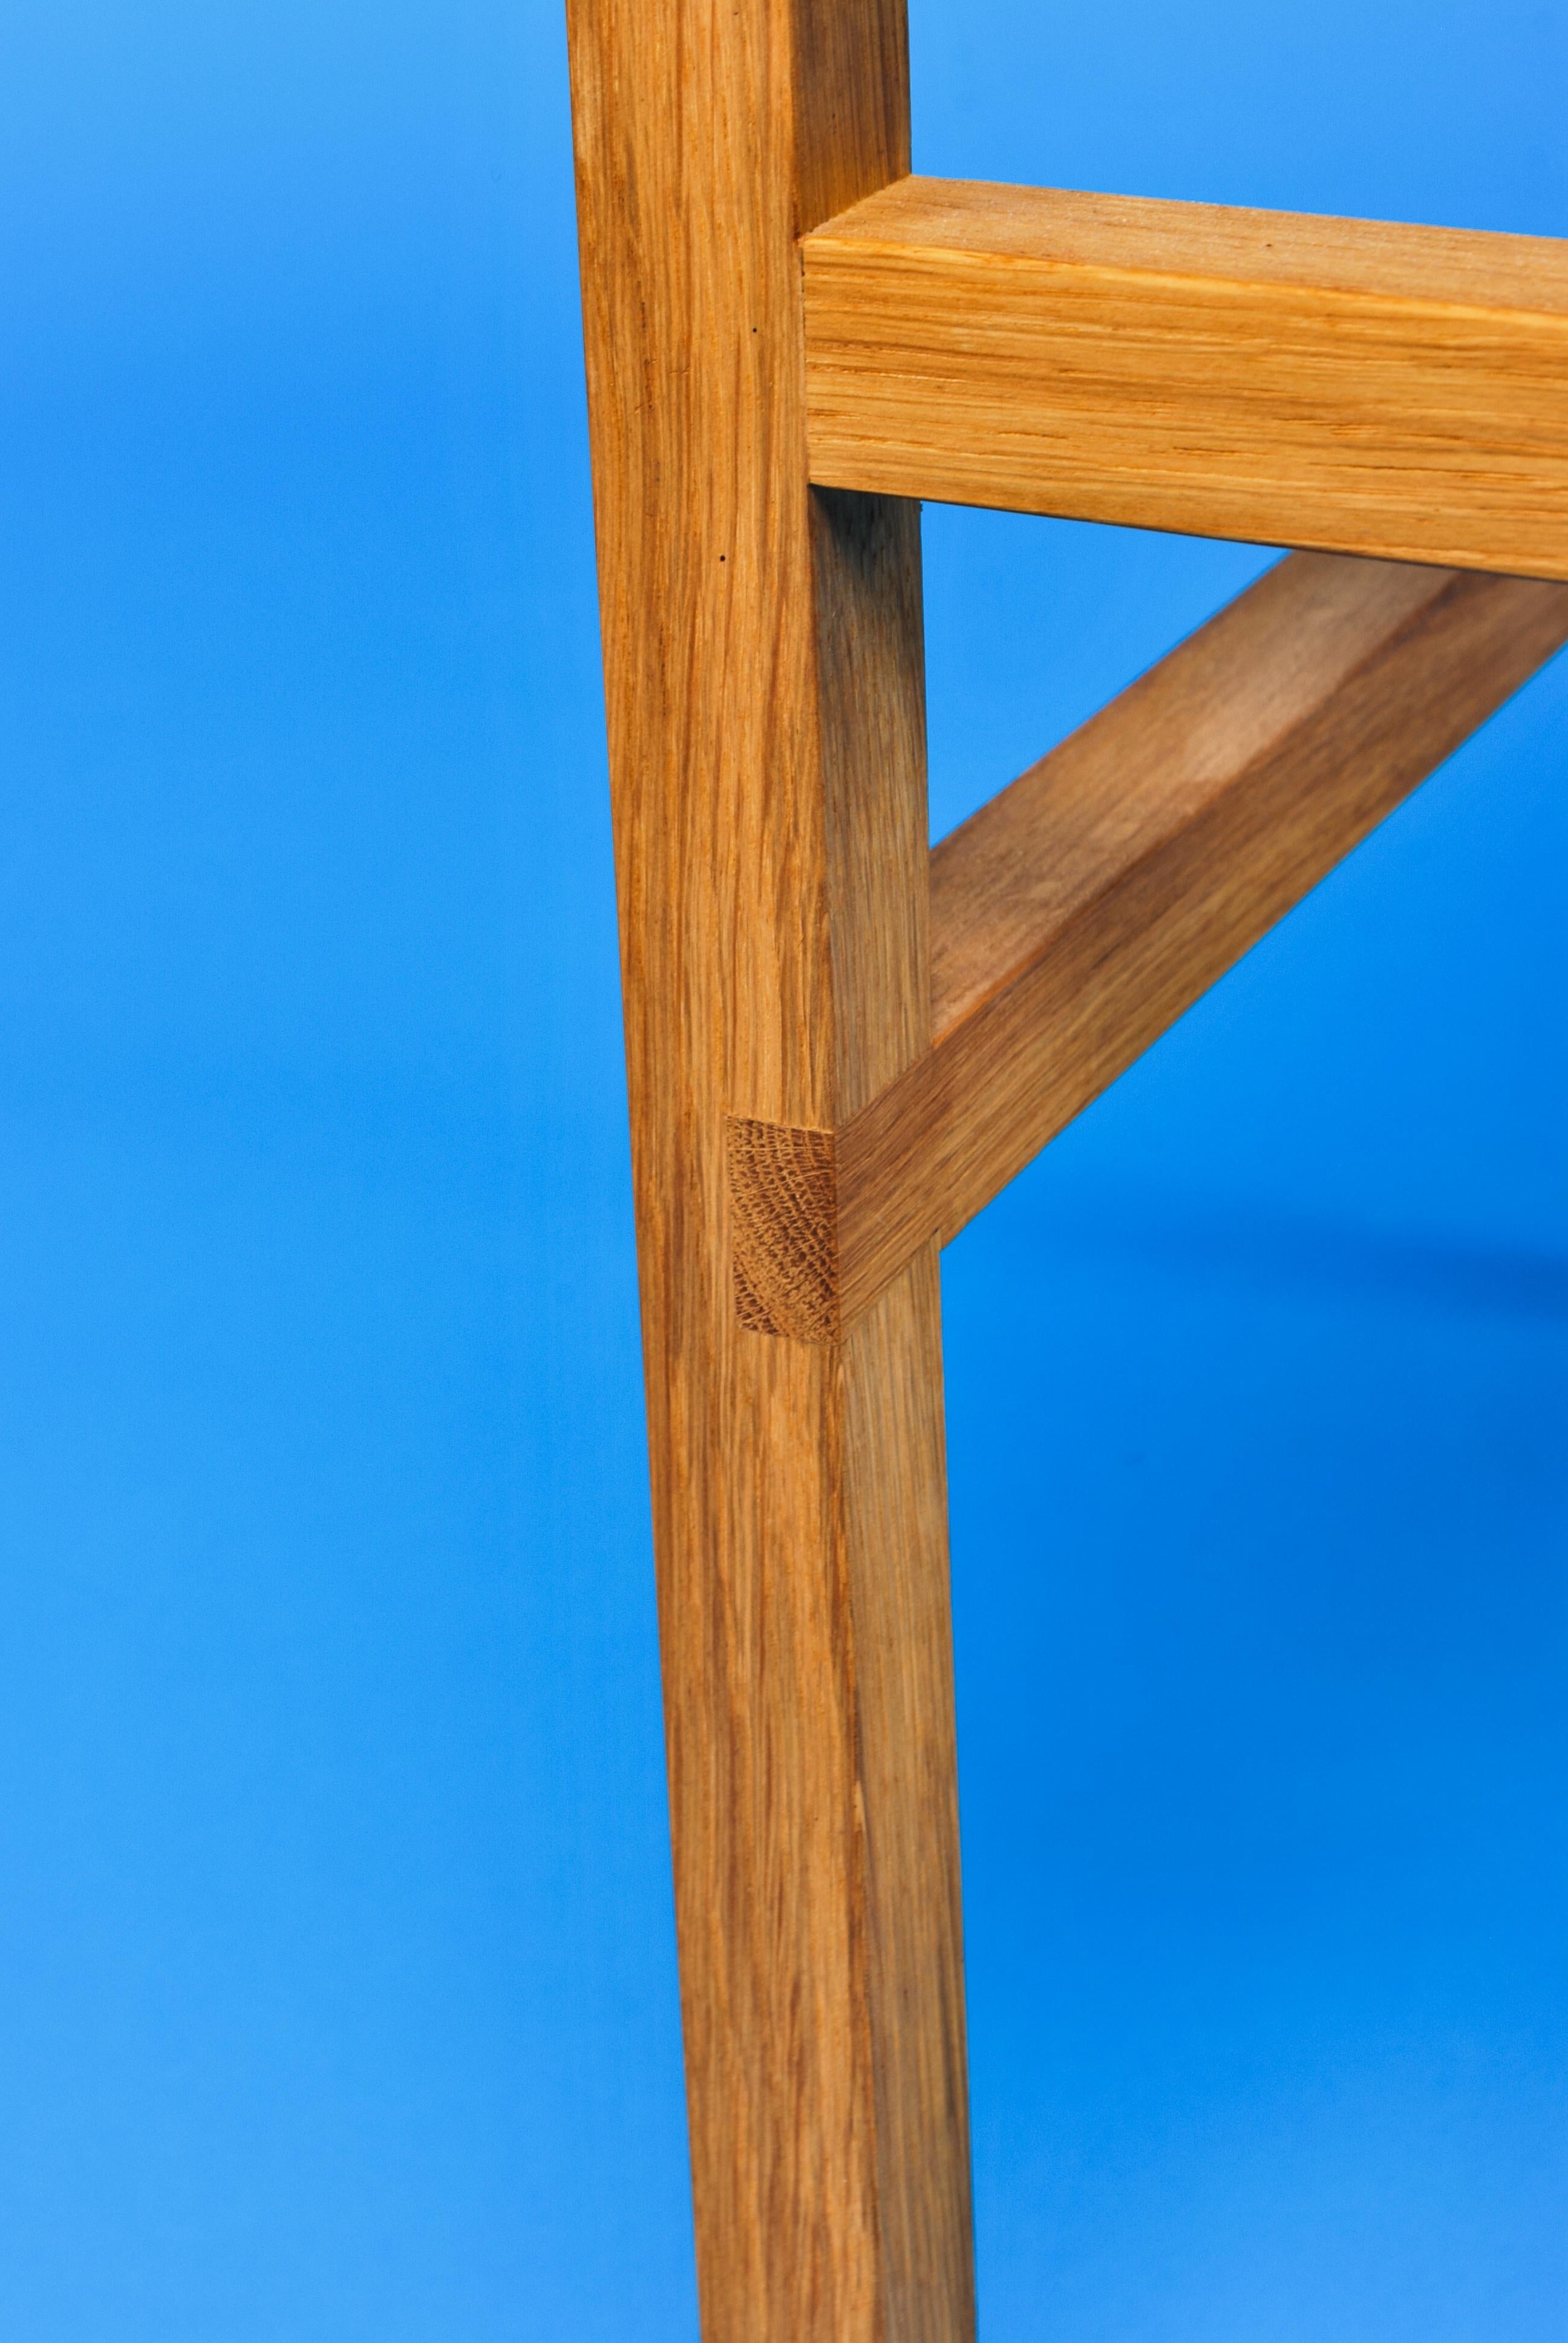 Britannique Organic Modernity Dining Chair, Solid Oak, Wood, Handmade, Creator Loose Fit, UK (chaise de salle à manger organique moderne, en chêne massif, en bois, faite à la main) en vente